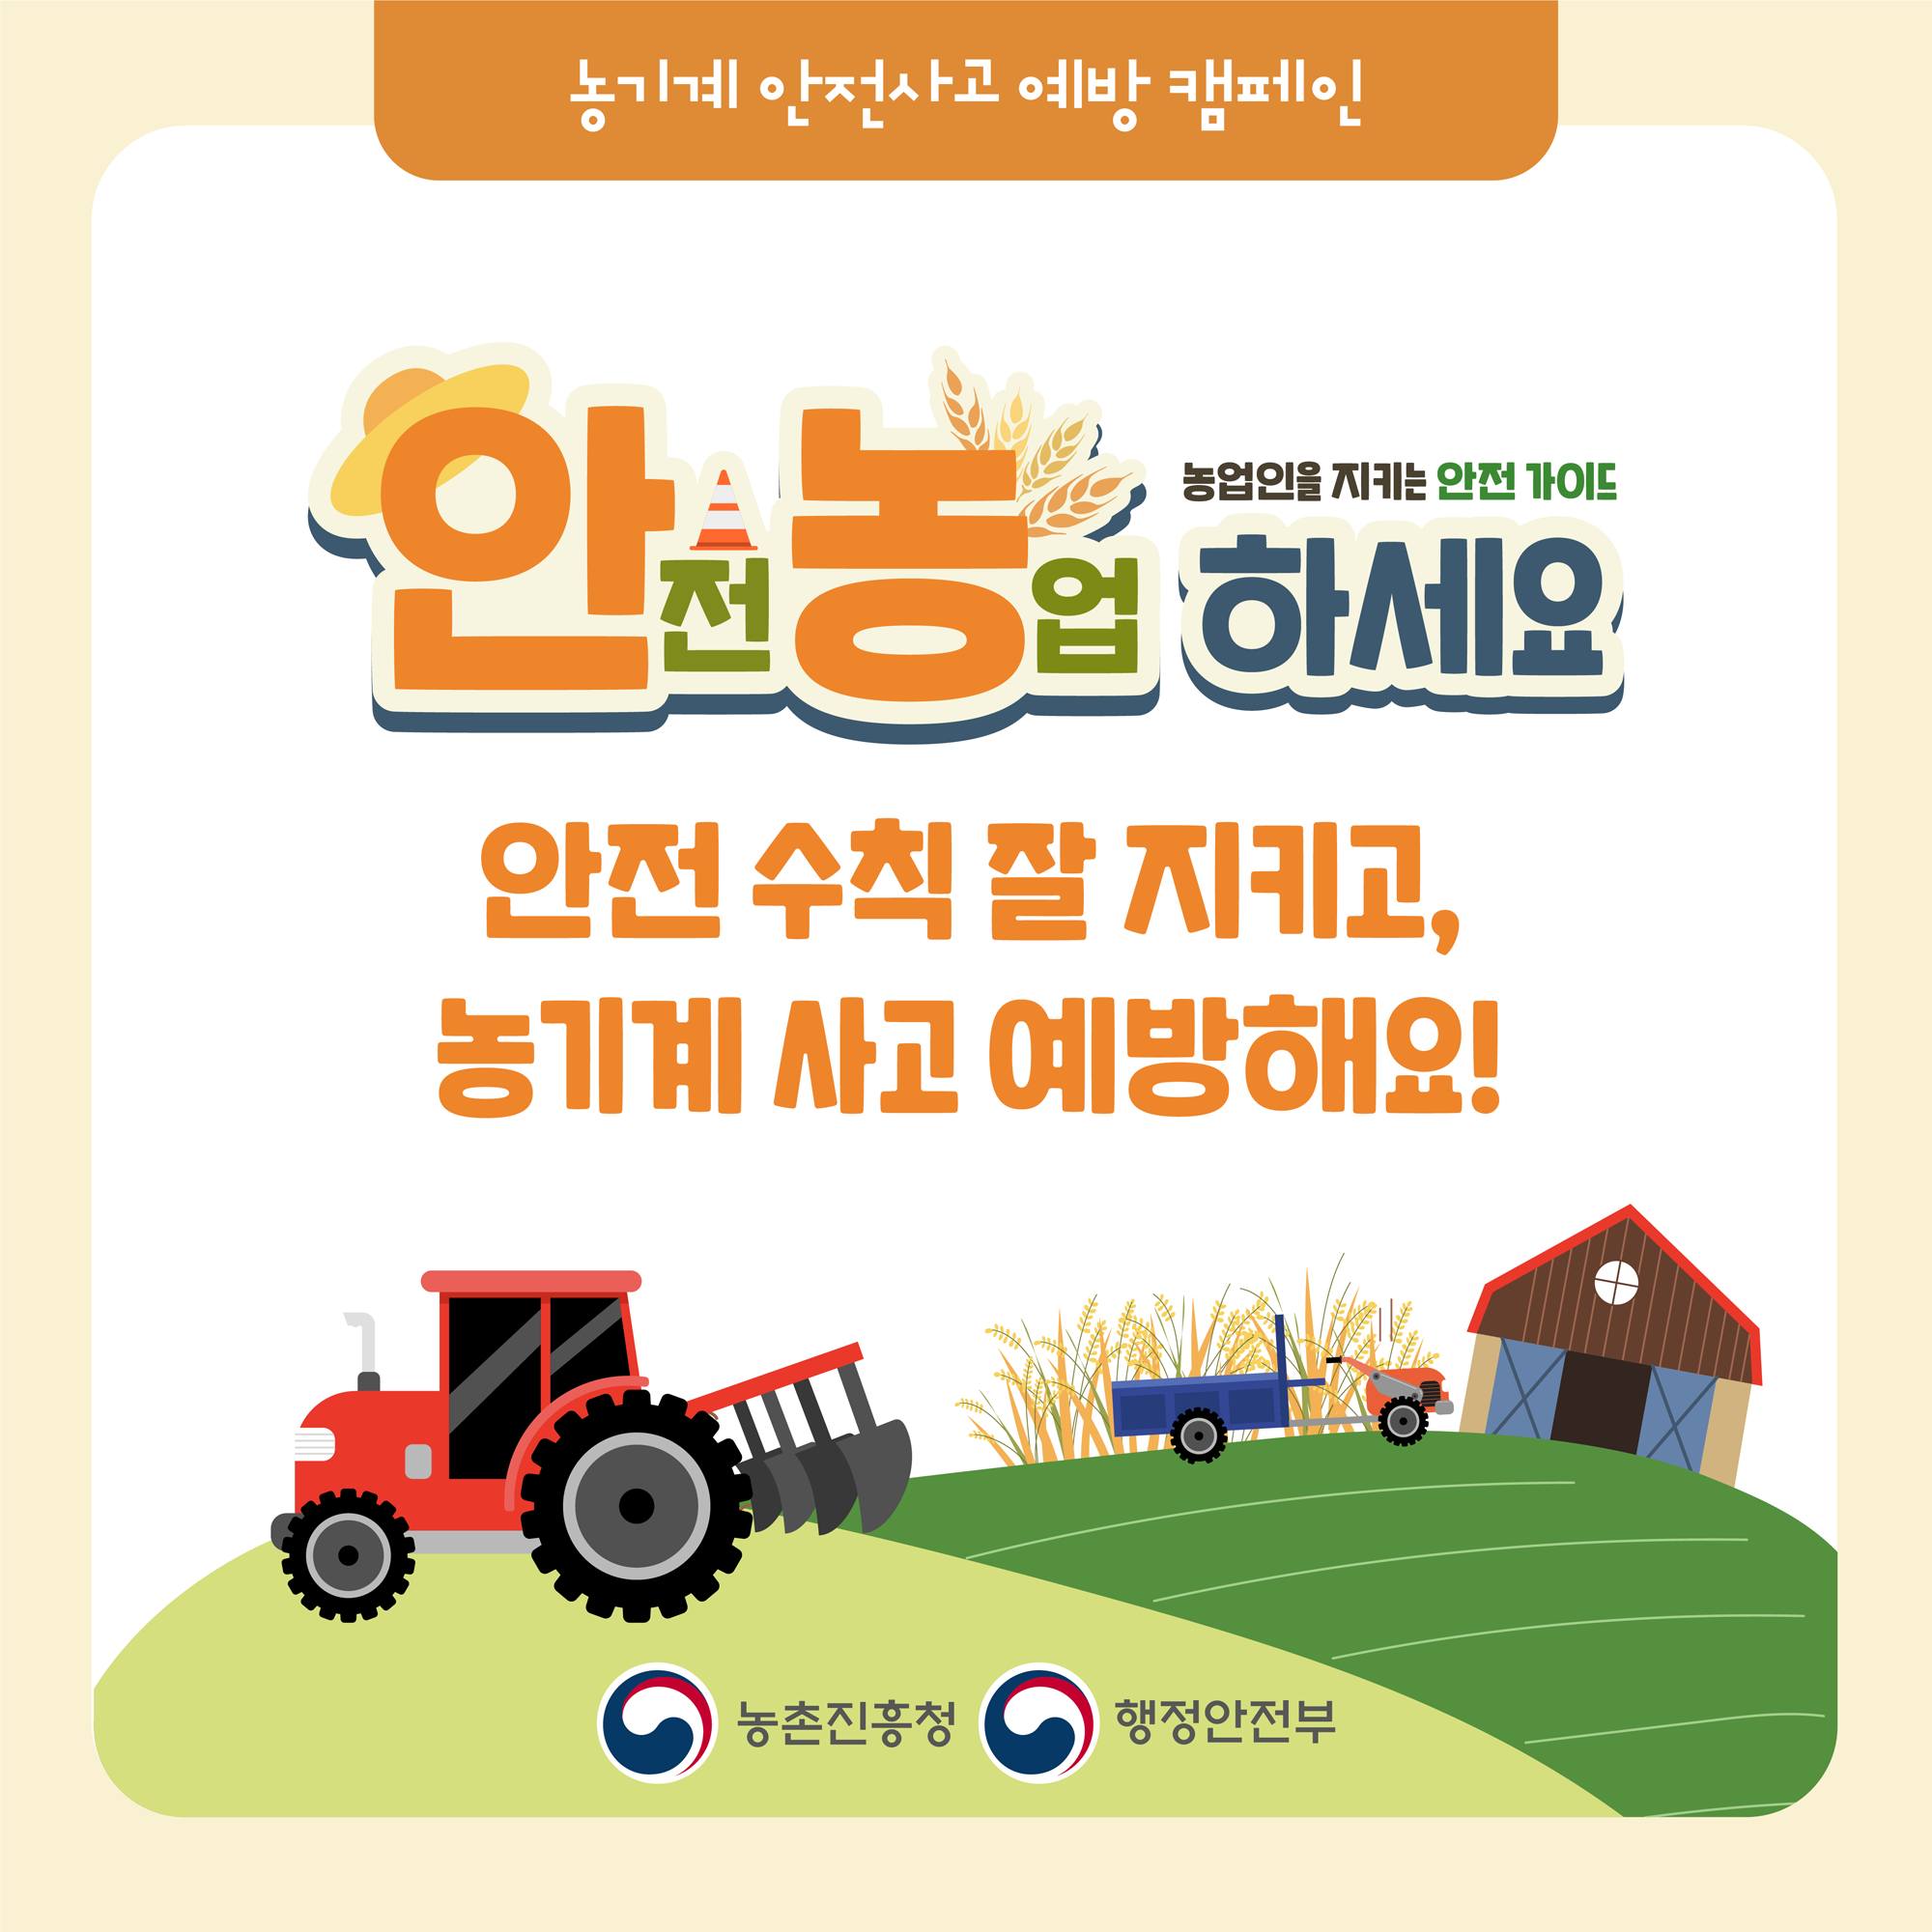 안전농업 하세요! 안전 수칙 잘 지키고. 농기계 사고 예방해요!